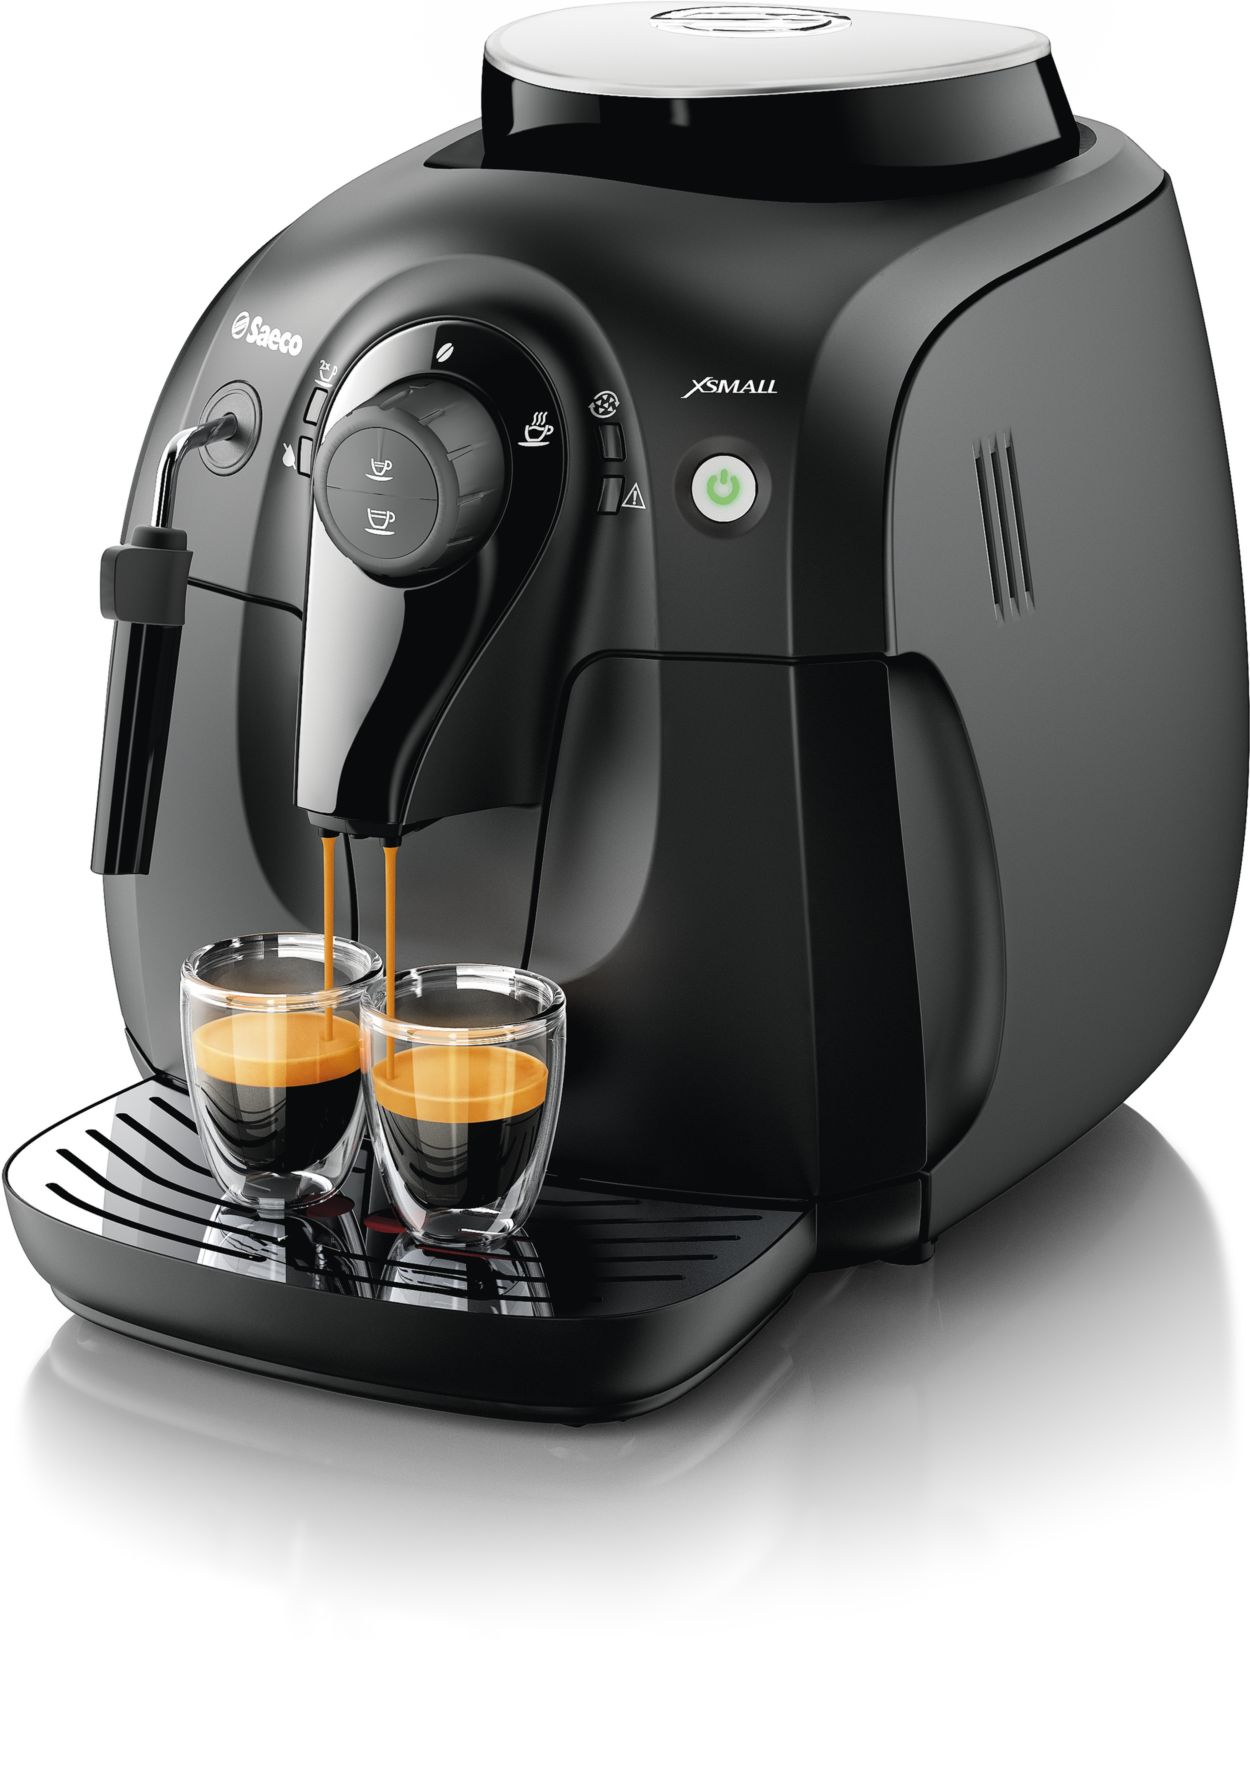 Manual espresso machine